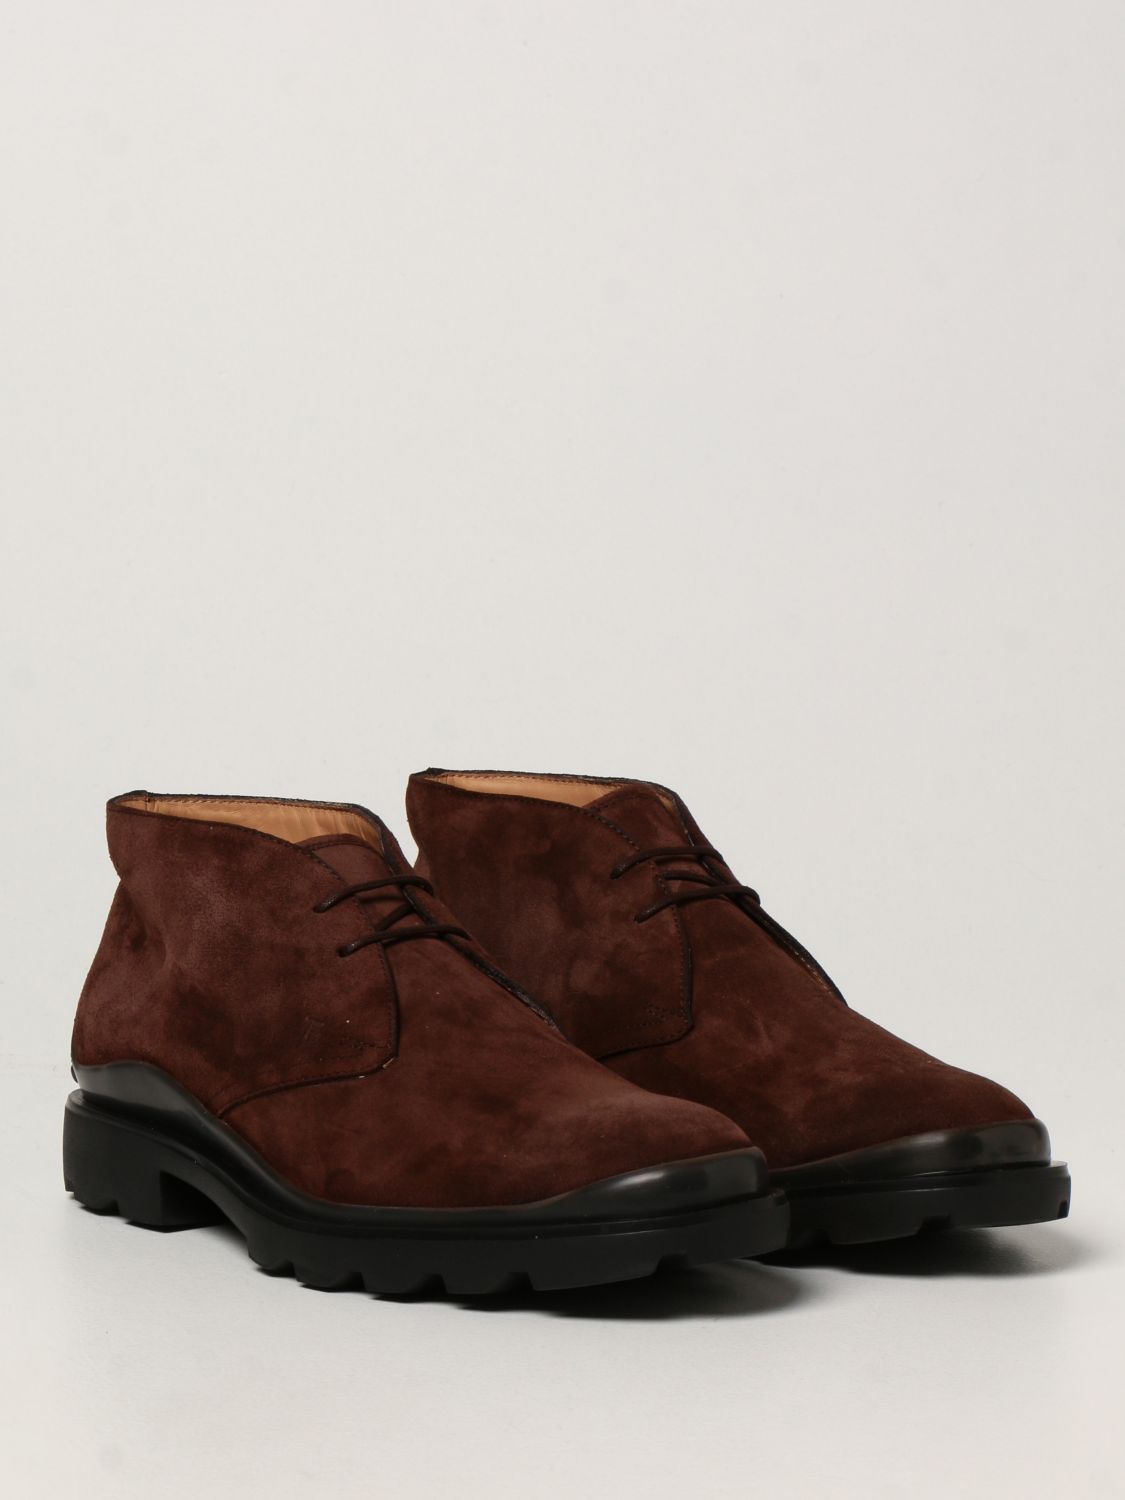 Zapatos abotinados Tod's: Zapatos hombre Tod's marrón oscuro 2